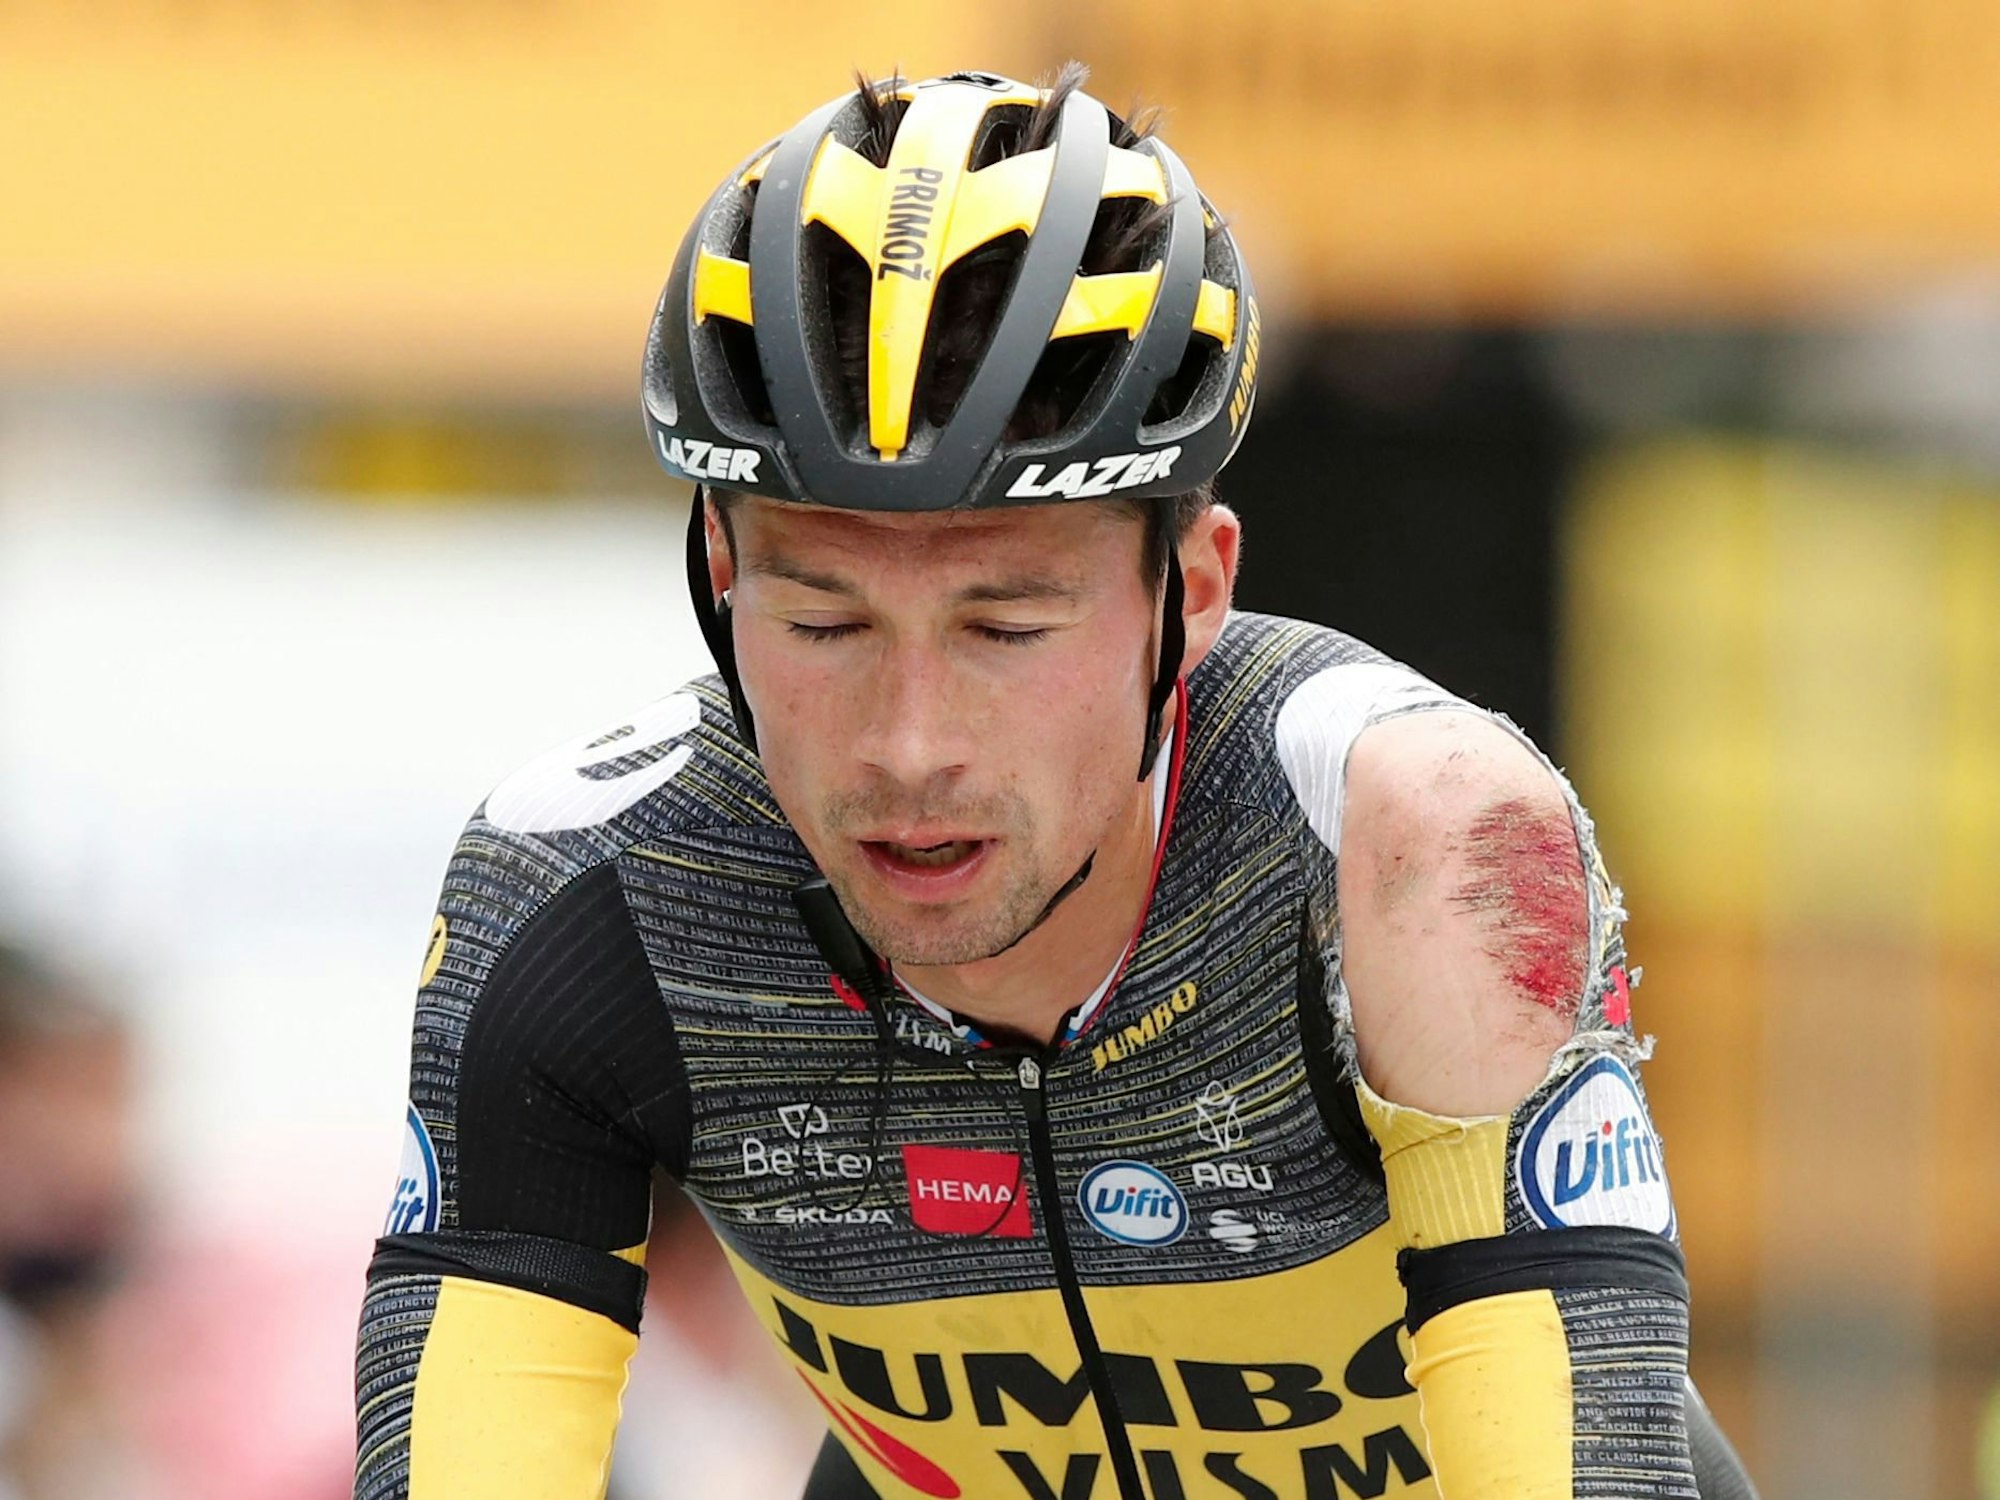 Der verletzte Radfahrer Primoz Roglic auf der dritten Etappe der Tour de France